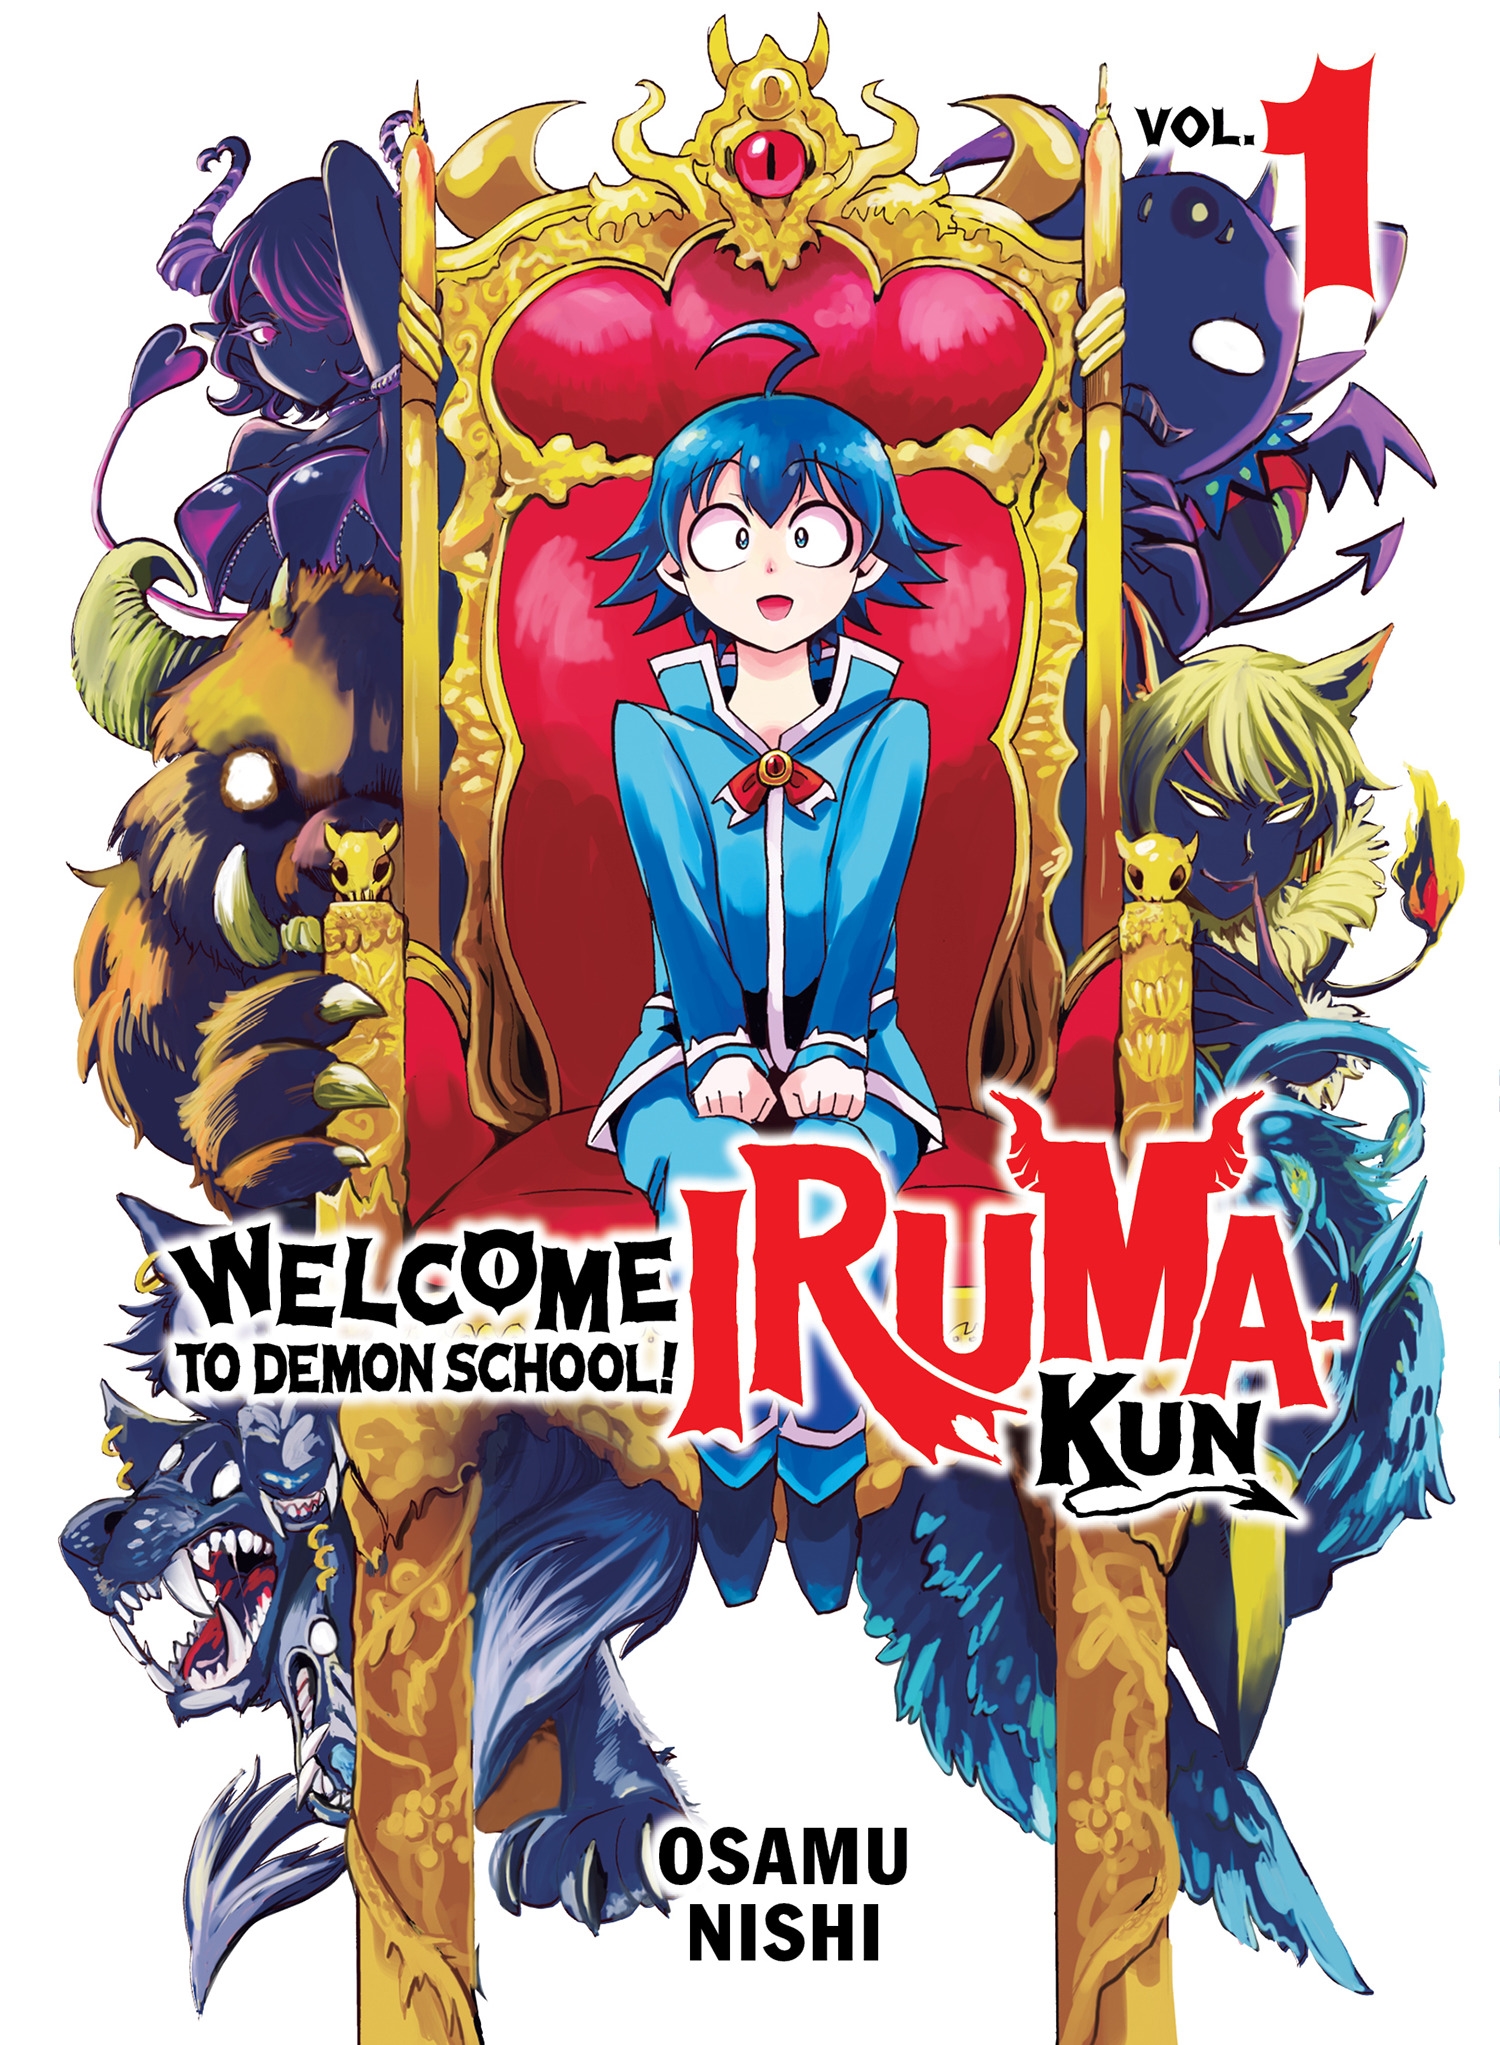 Welcome to demonschool Iruma-kun gets a Portugese dub :  r/DemonSchoolIrumakun